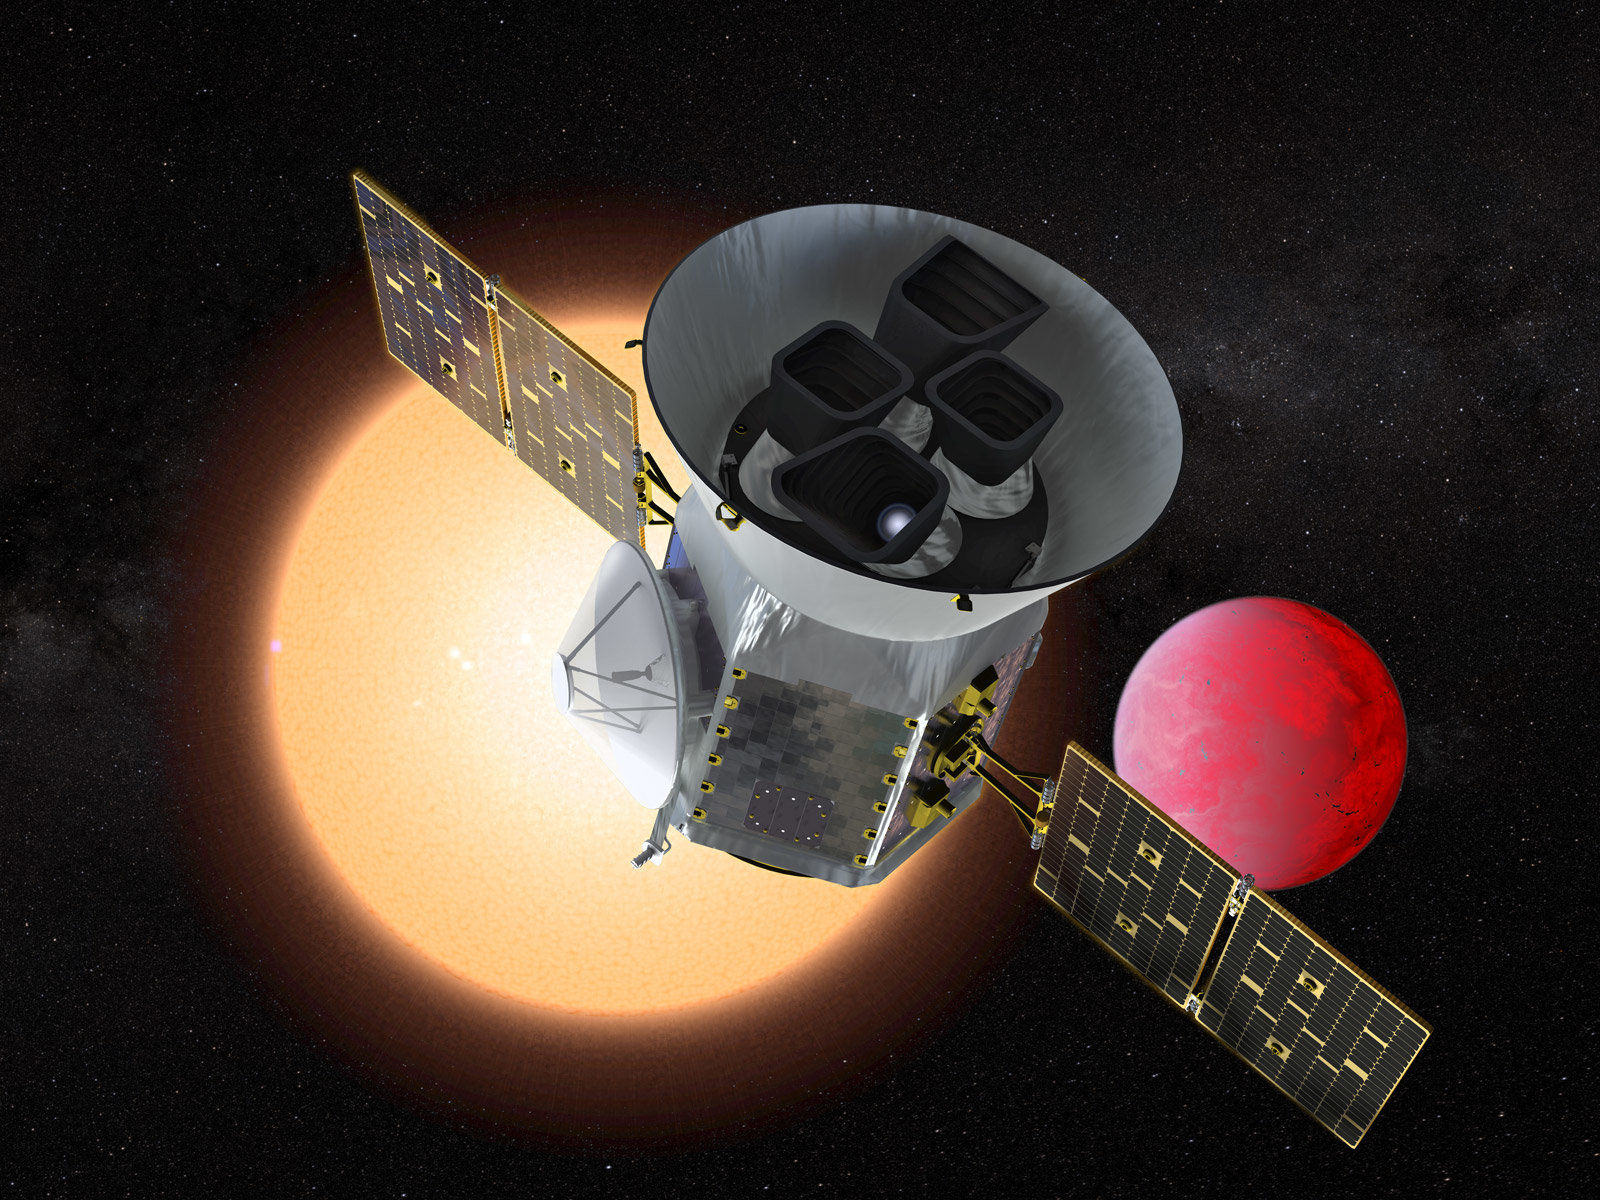 НАСА готовится запустить новую миссию для наблюдений экзопланет